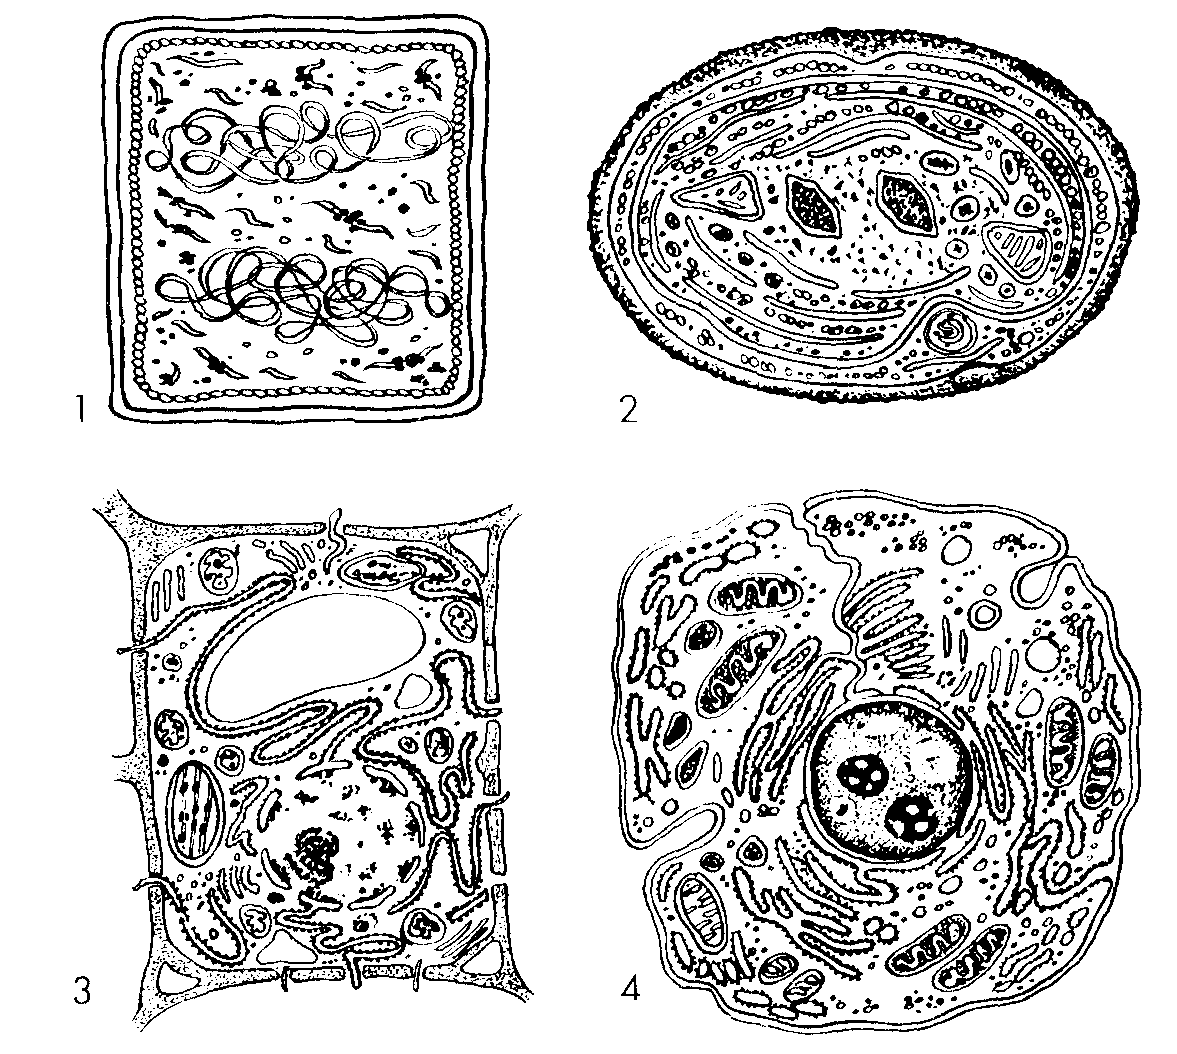 Клетки растительные животные бактериальные грибные. Строение растительной клетки схема черно-белая. Ядро раст клетки. Клетки биология бактериальная грибная. Строение растительной клетки.